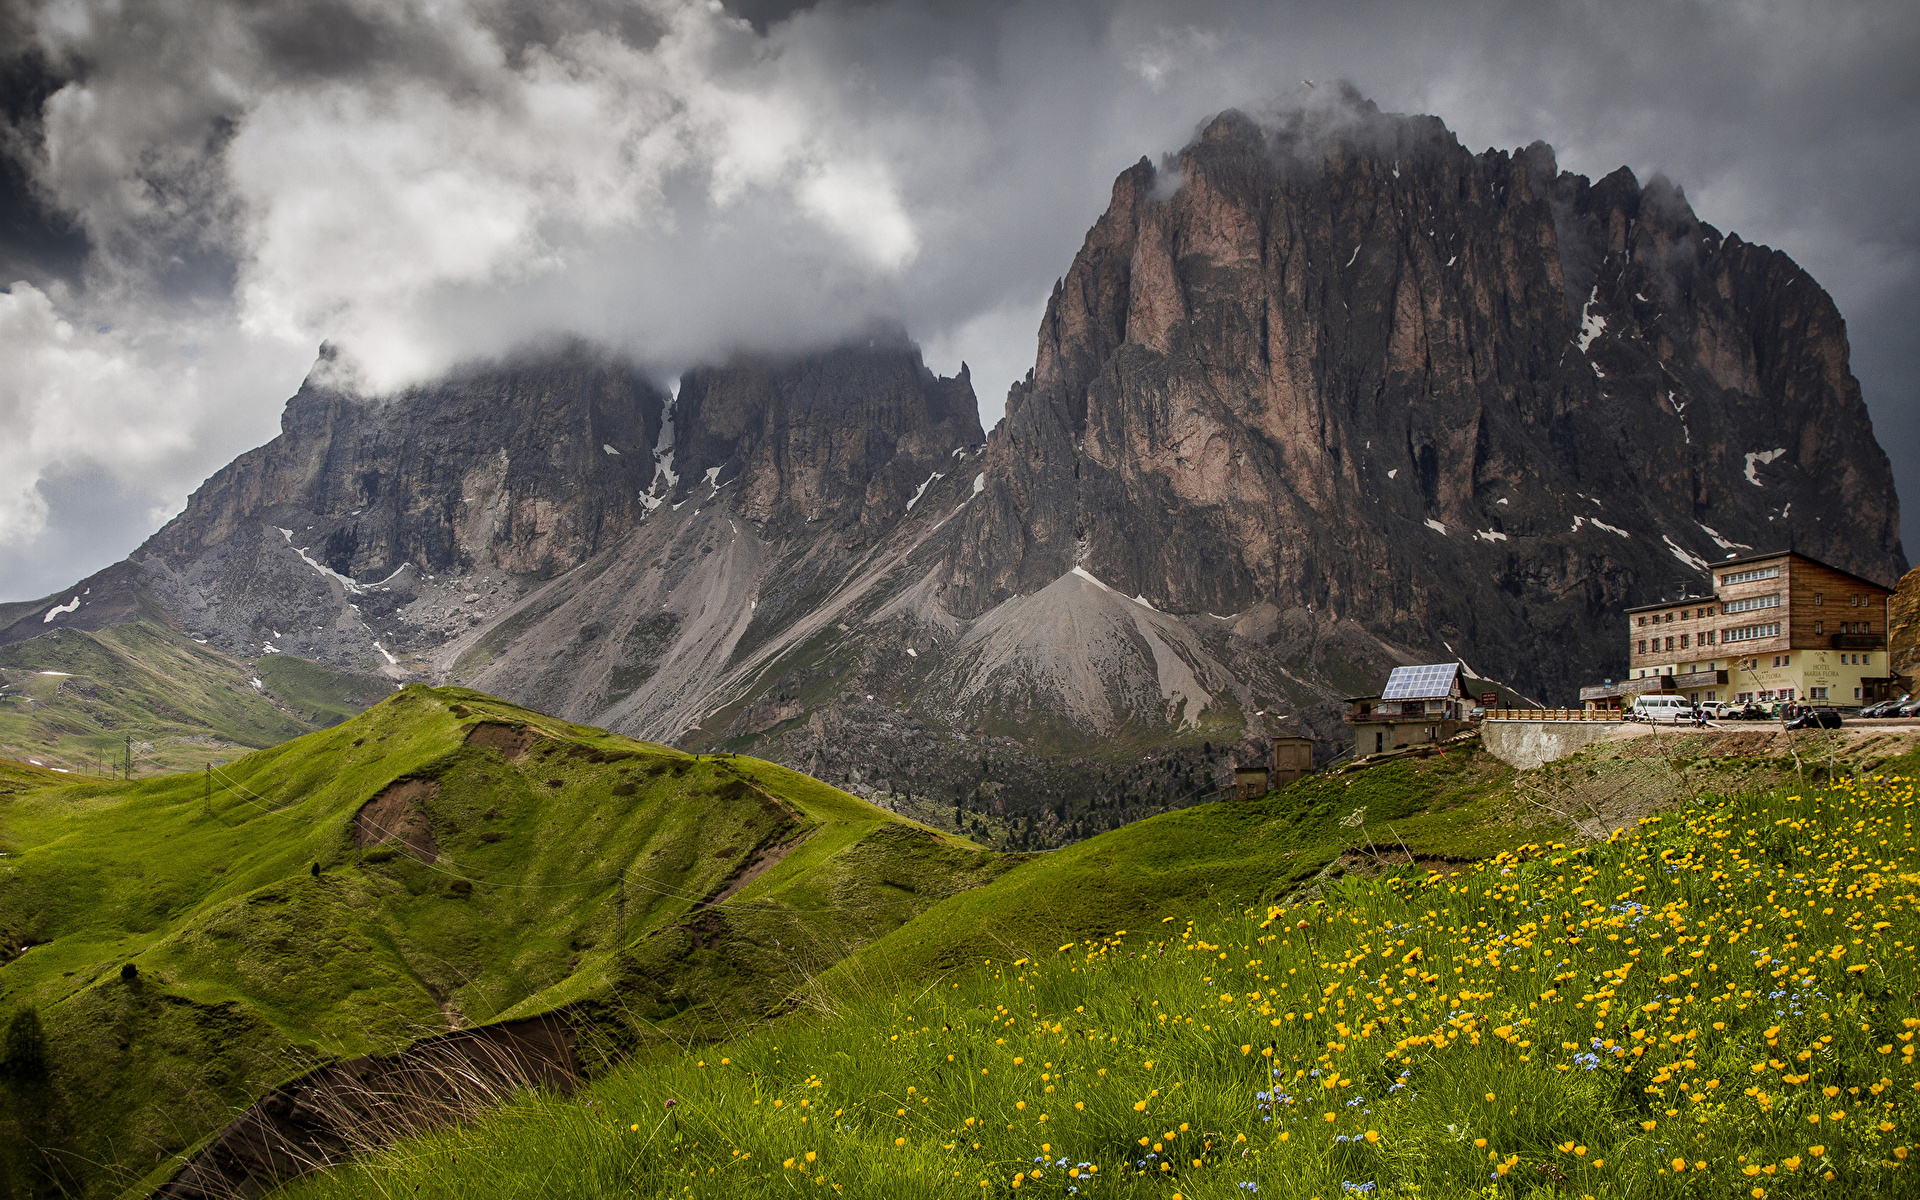 Обои для рабочего стола Альпы Италия Dolomites Горы скалы Природа 1920x1200 альп гора Утес скале Скала